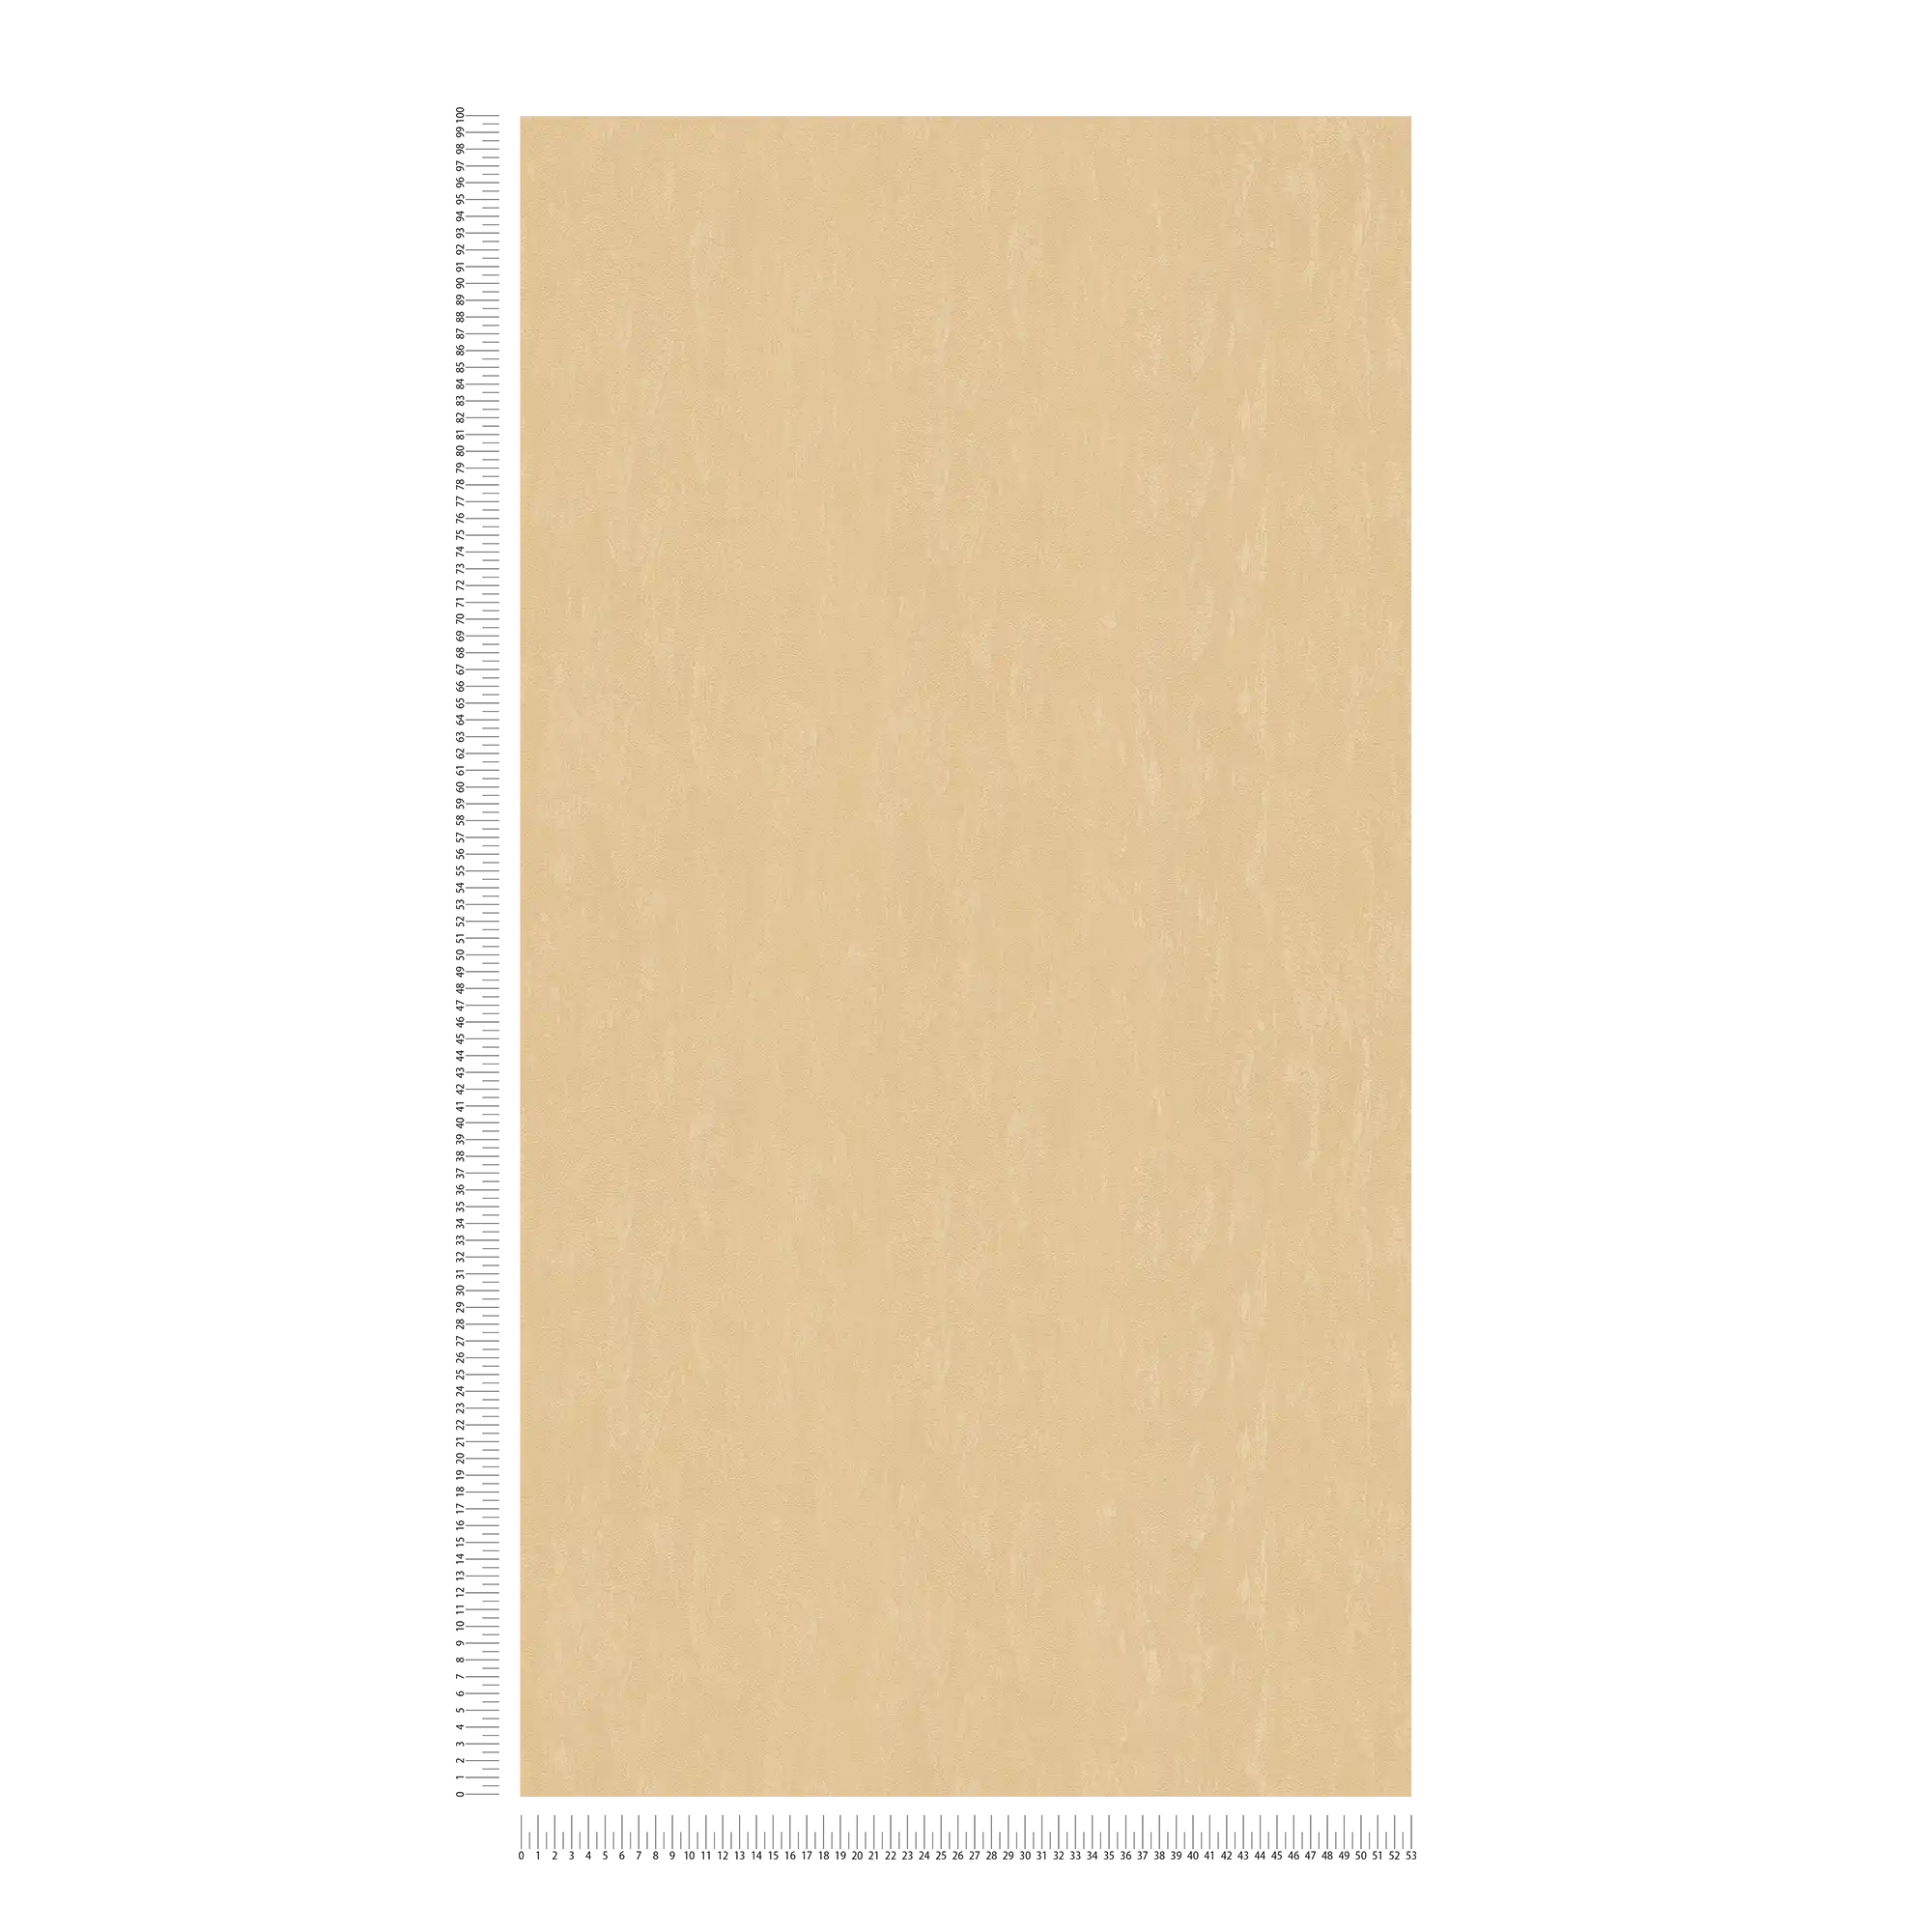             papel pintado beige arena liso con sombreado de color
        